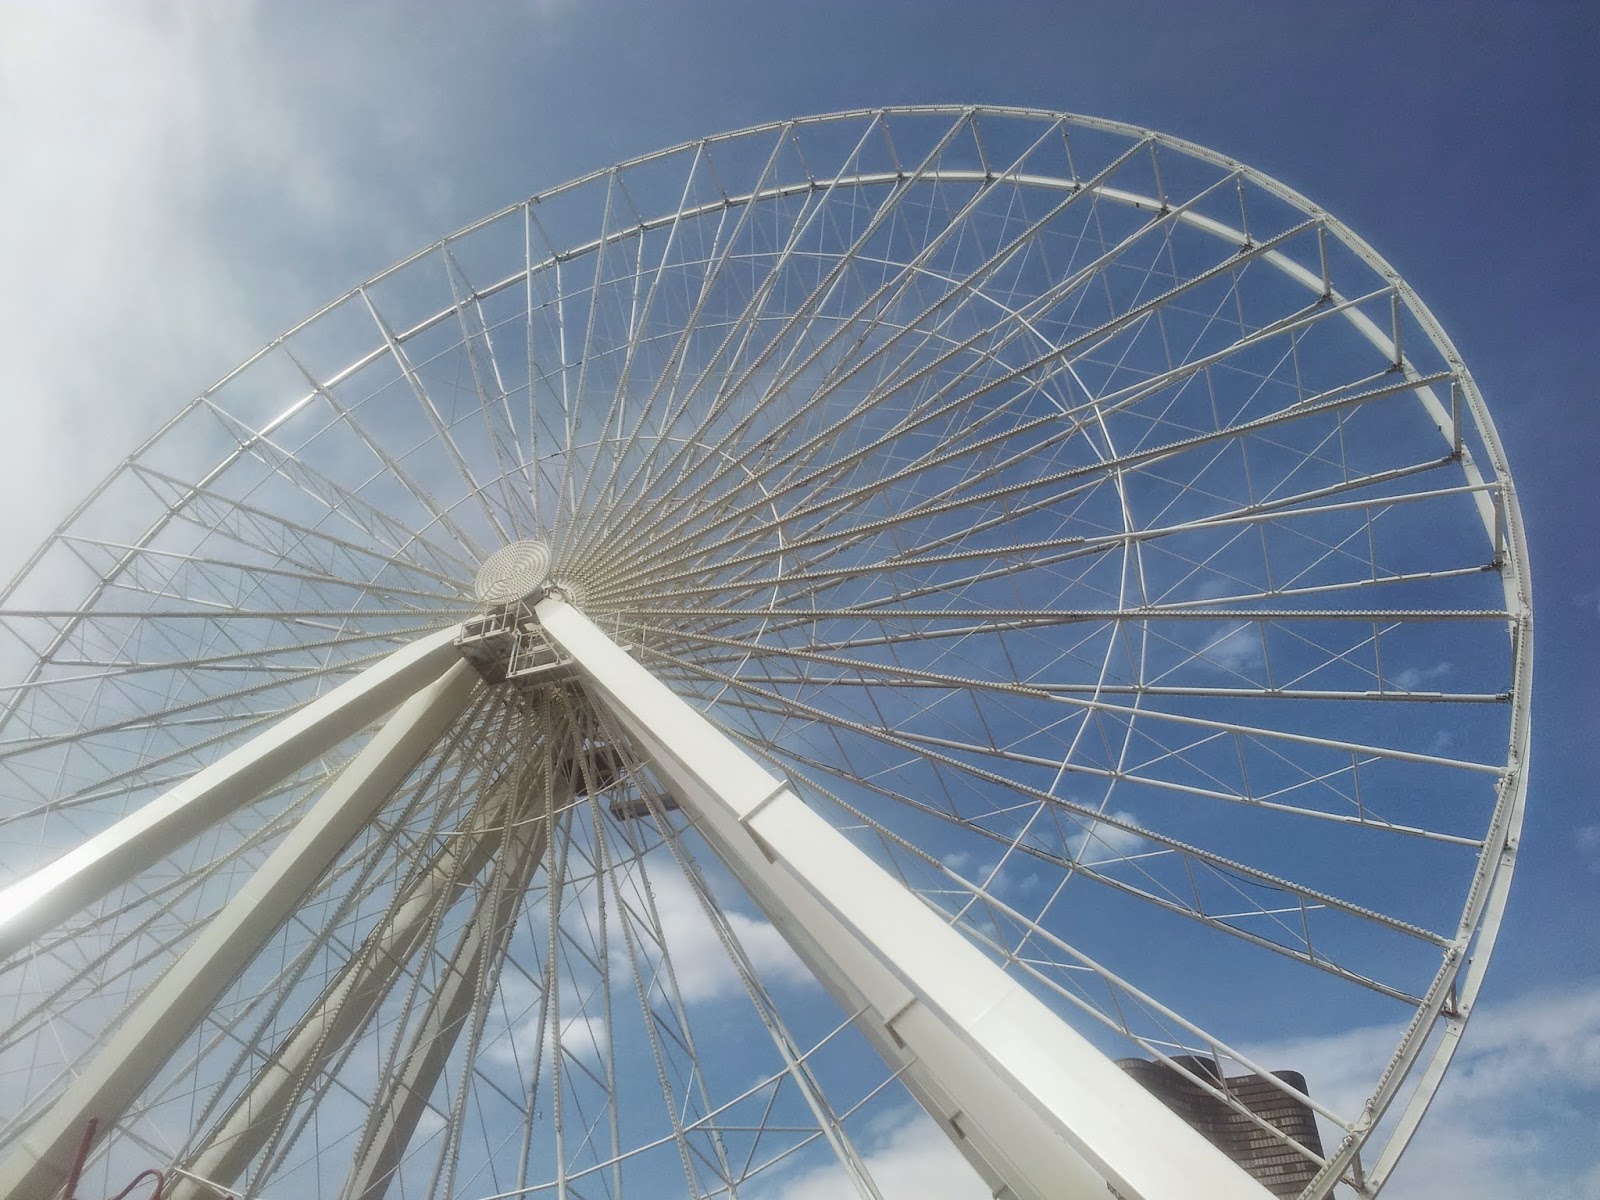 Ferris Wheel at Navy Pier, Chicago, USA.